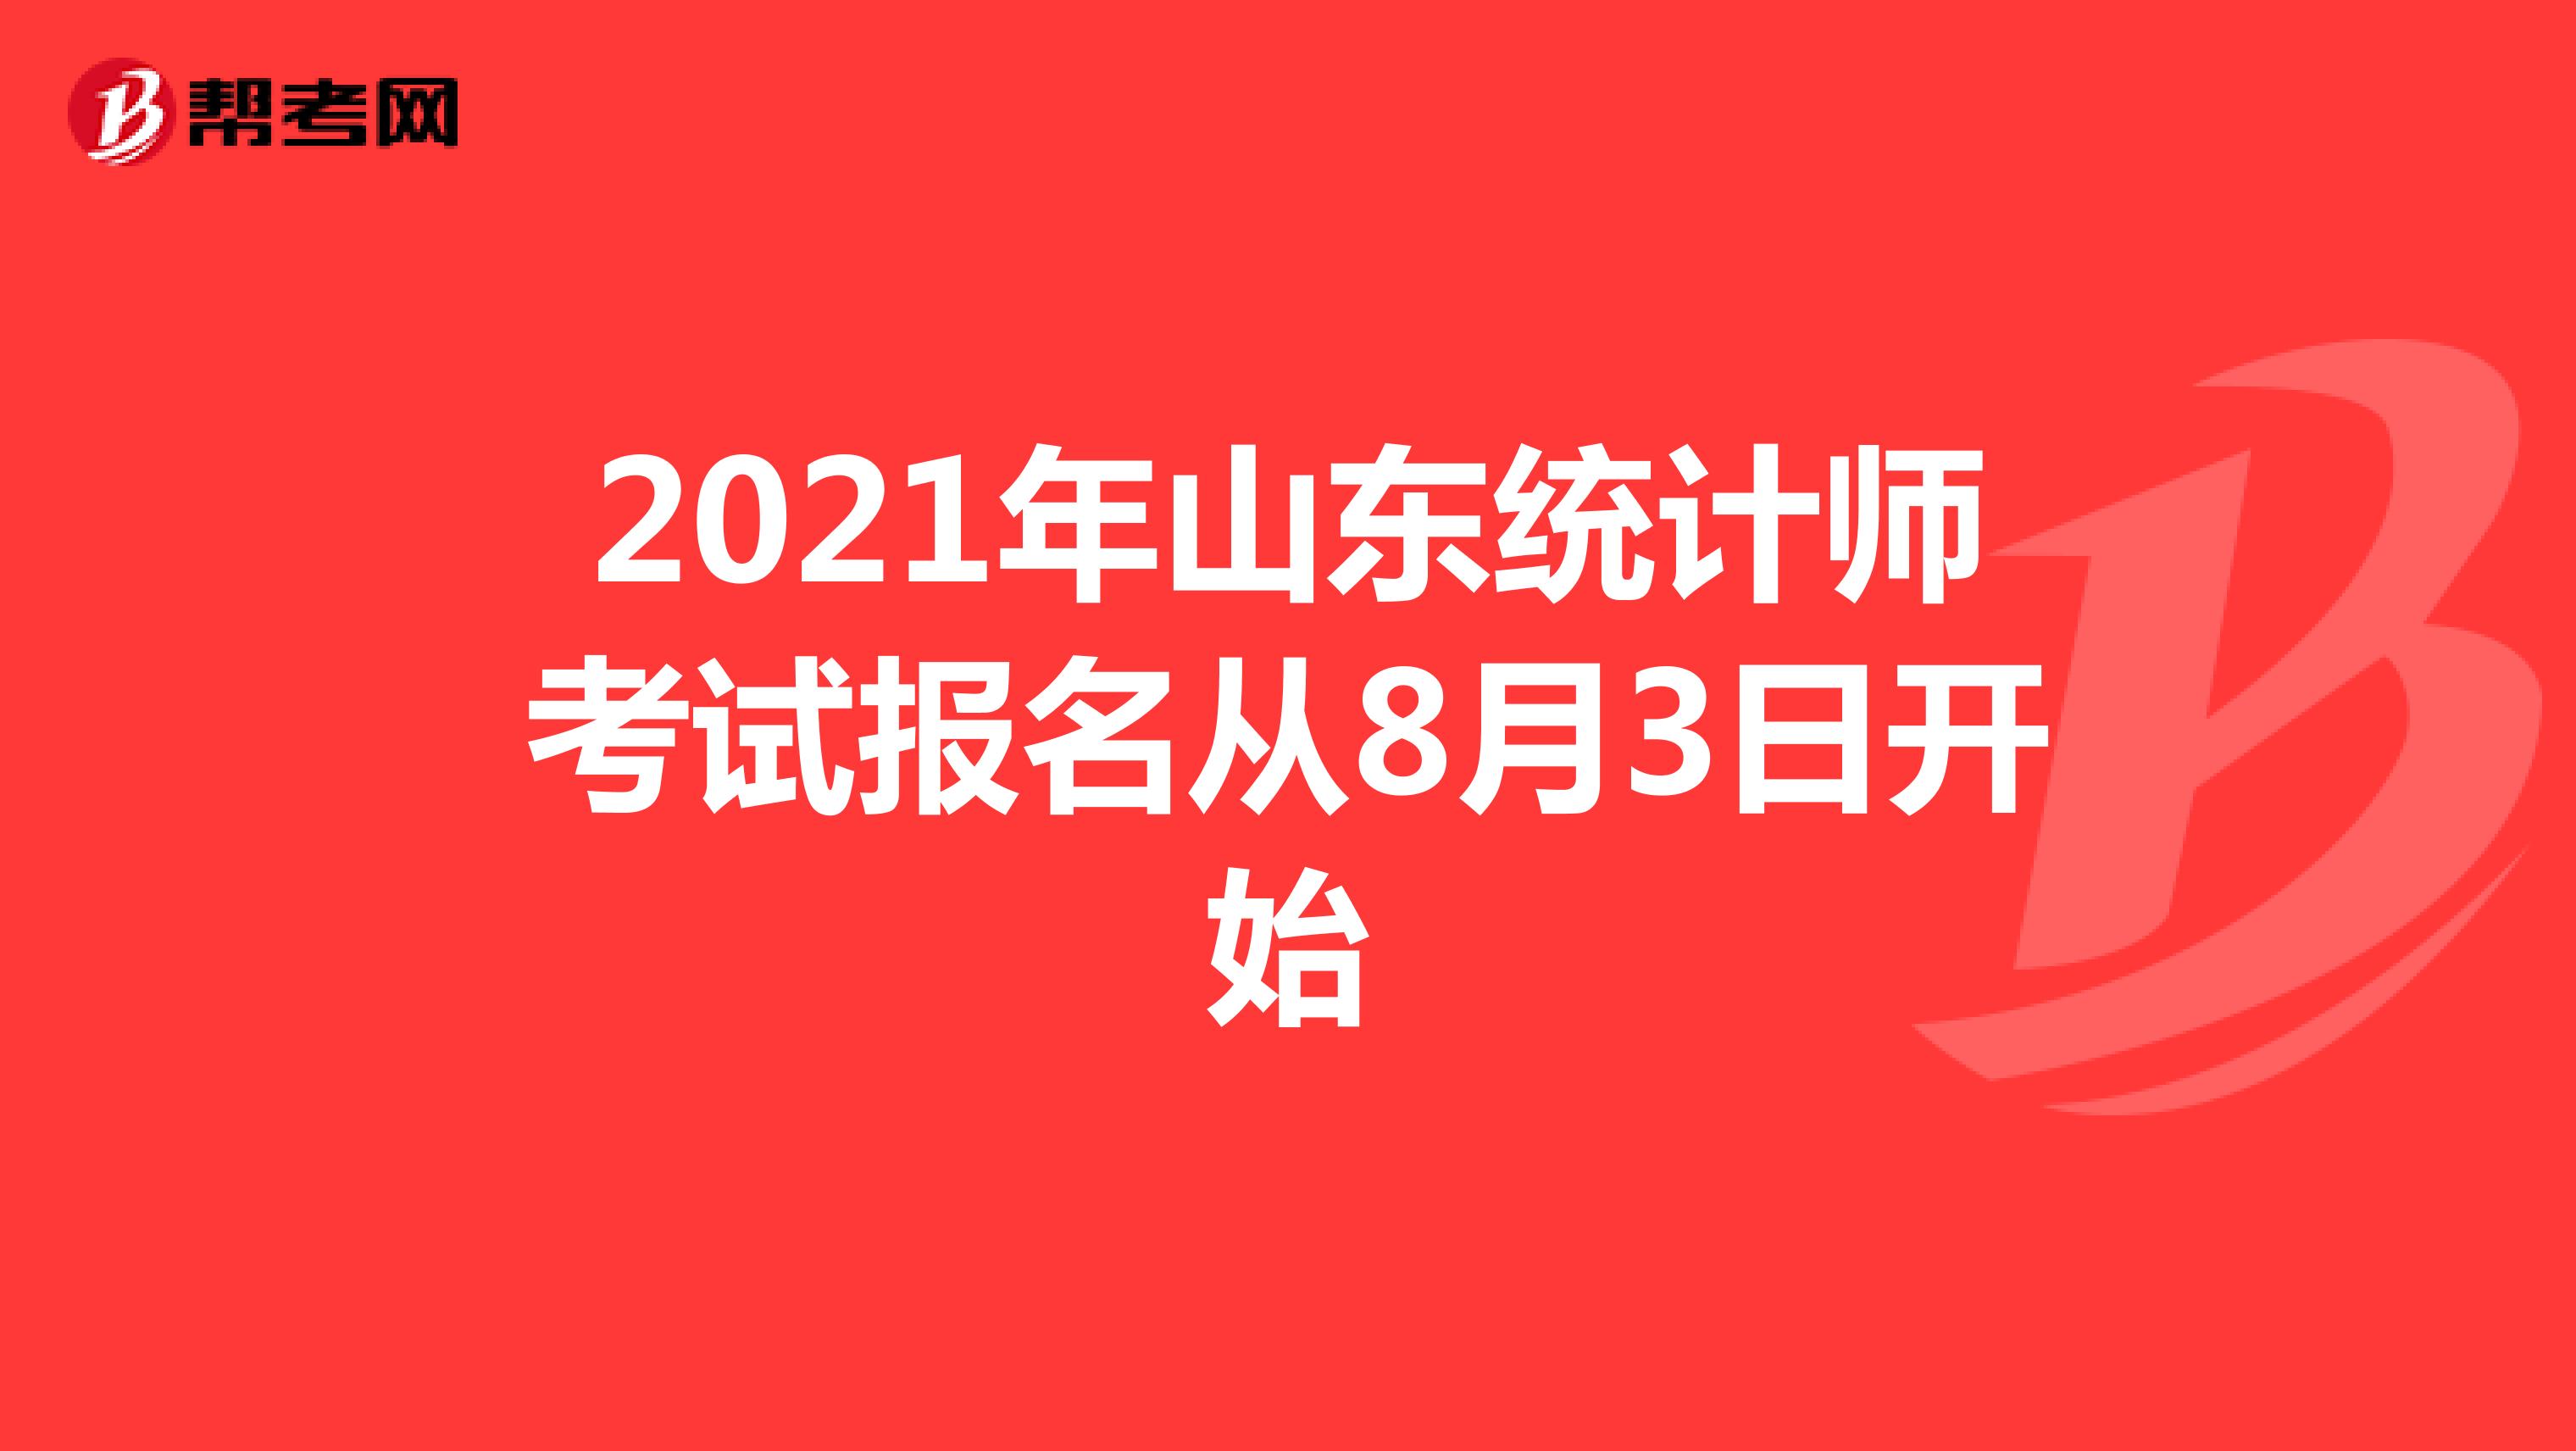 2021年山东统计师考试报名从8月3日开始